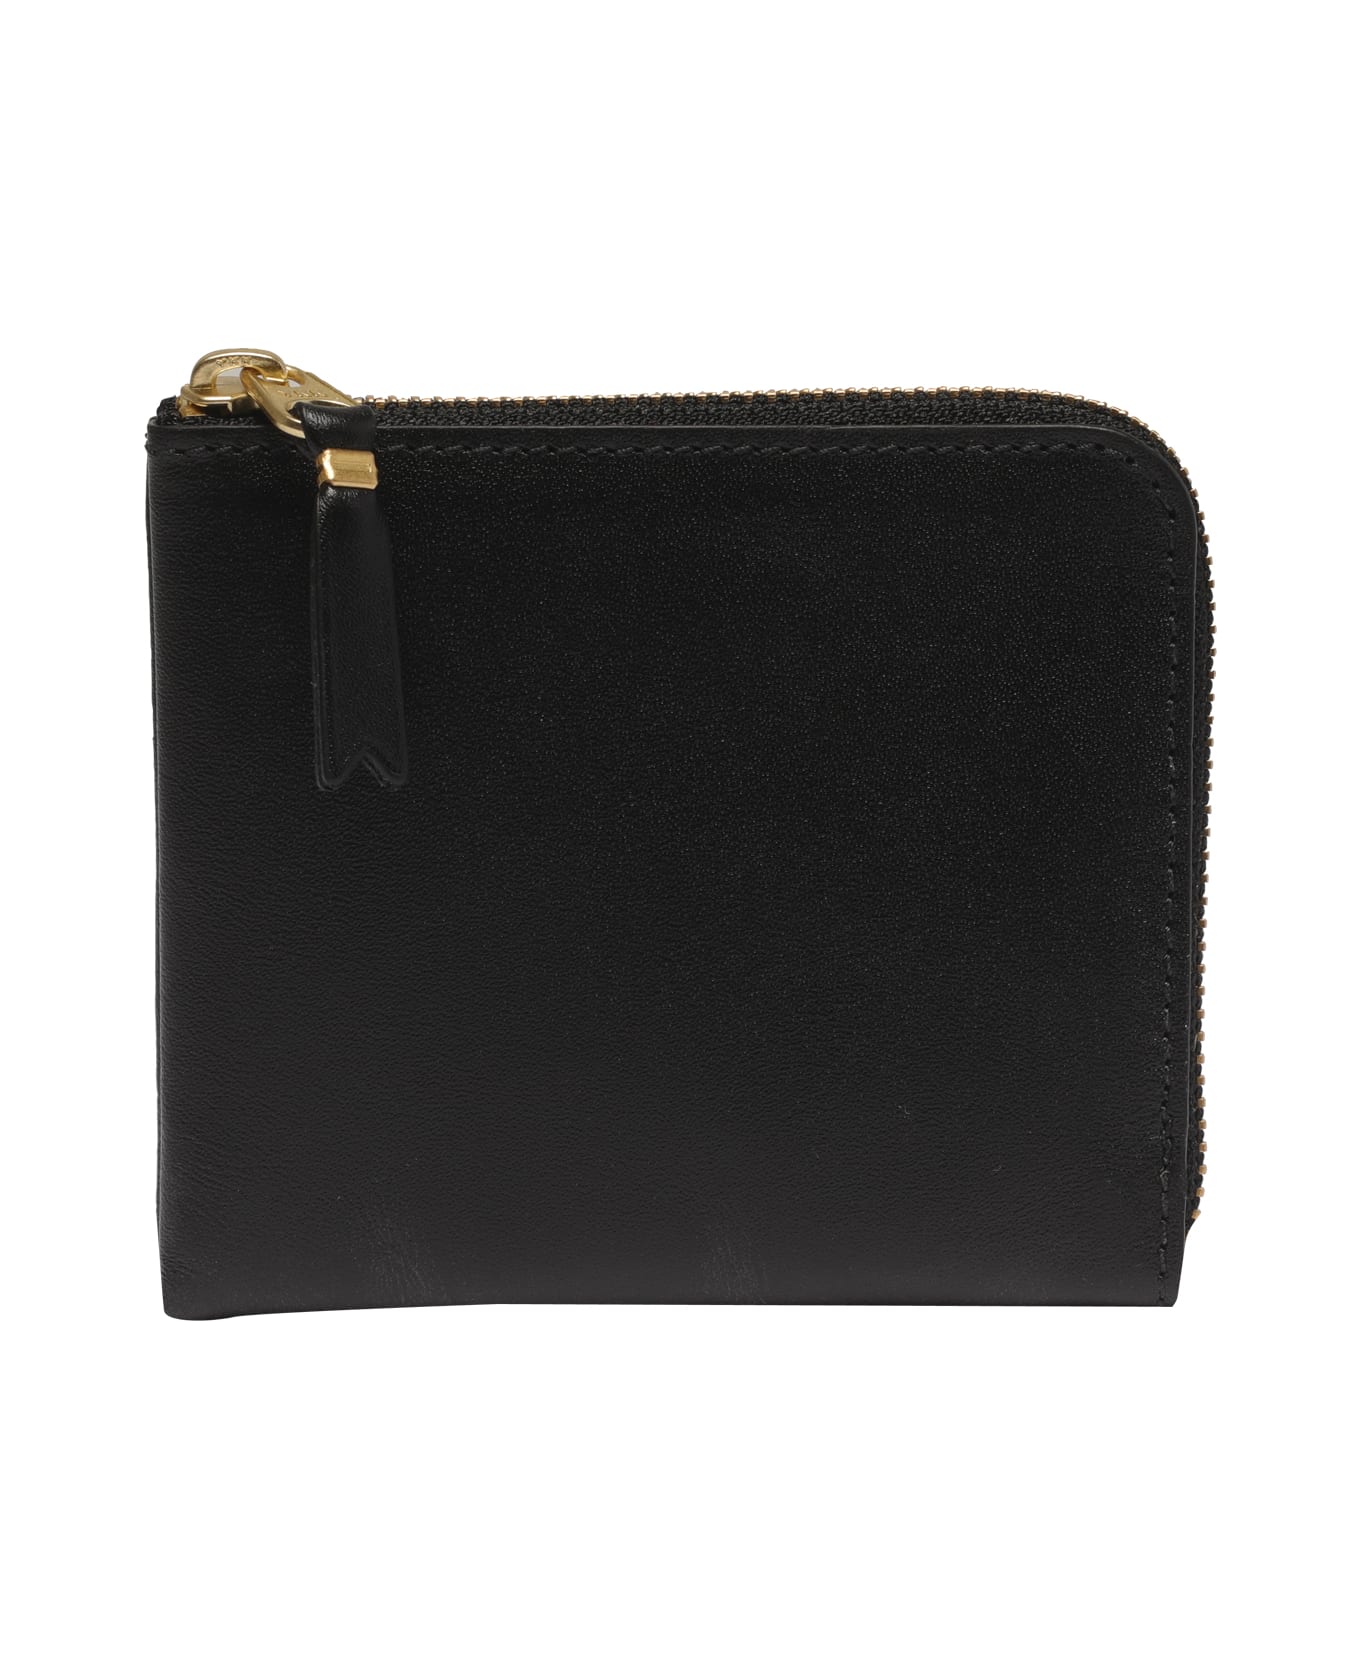 Comme des Garçons Wallet Classic Leather Line Wallet - Black 財布